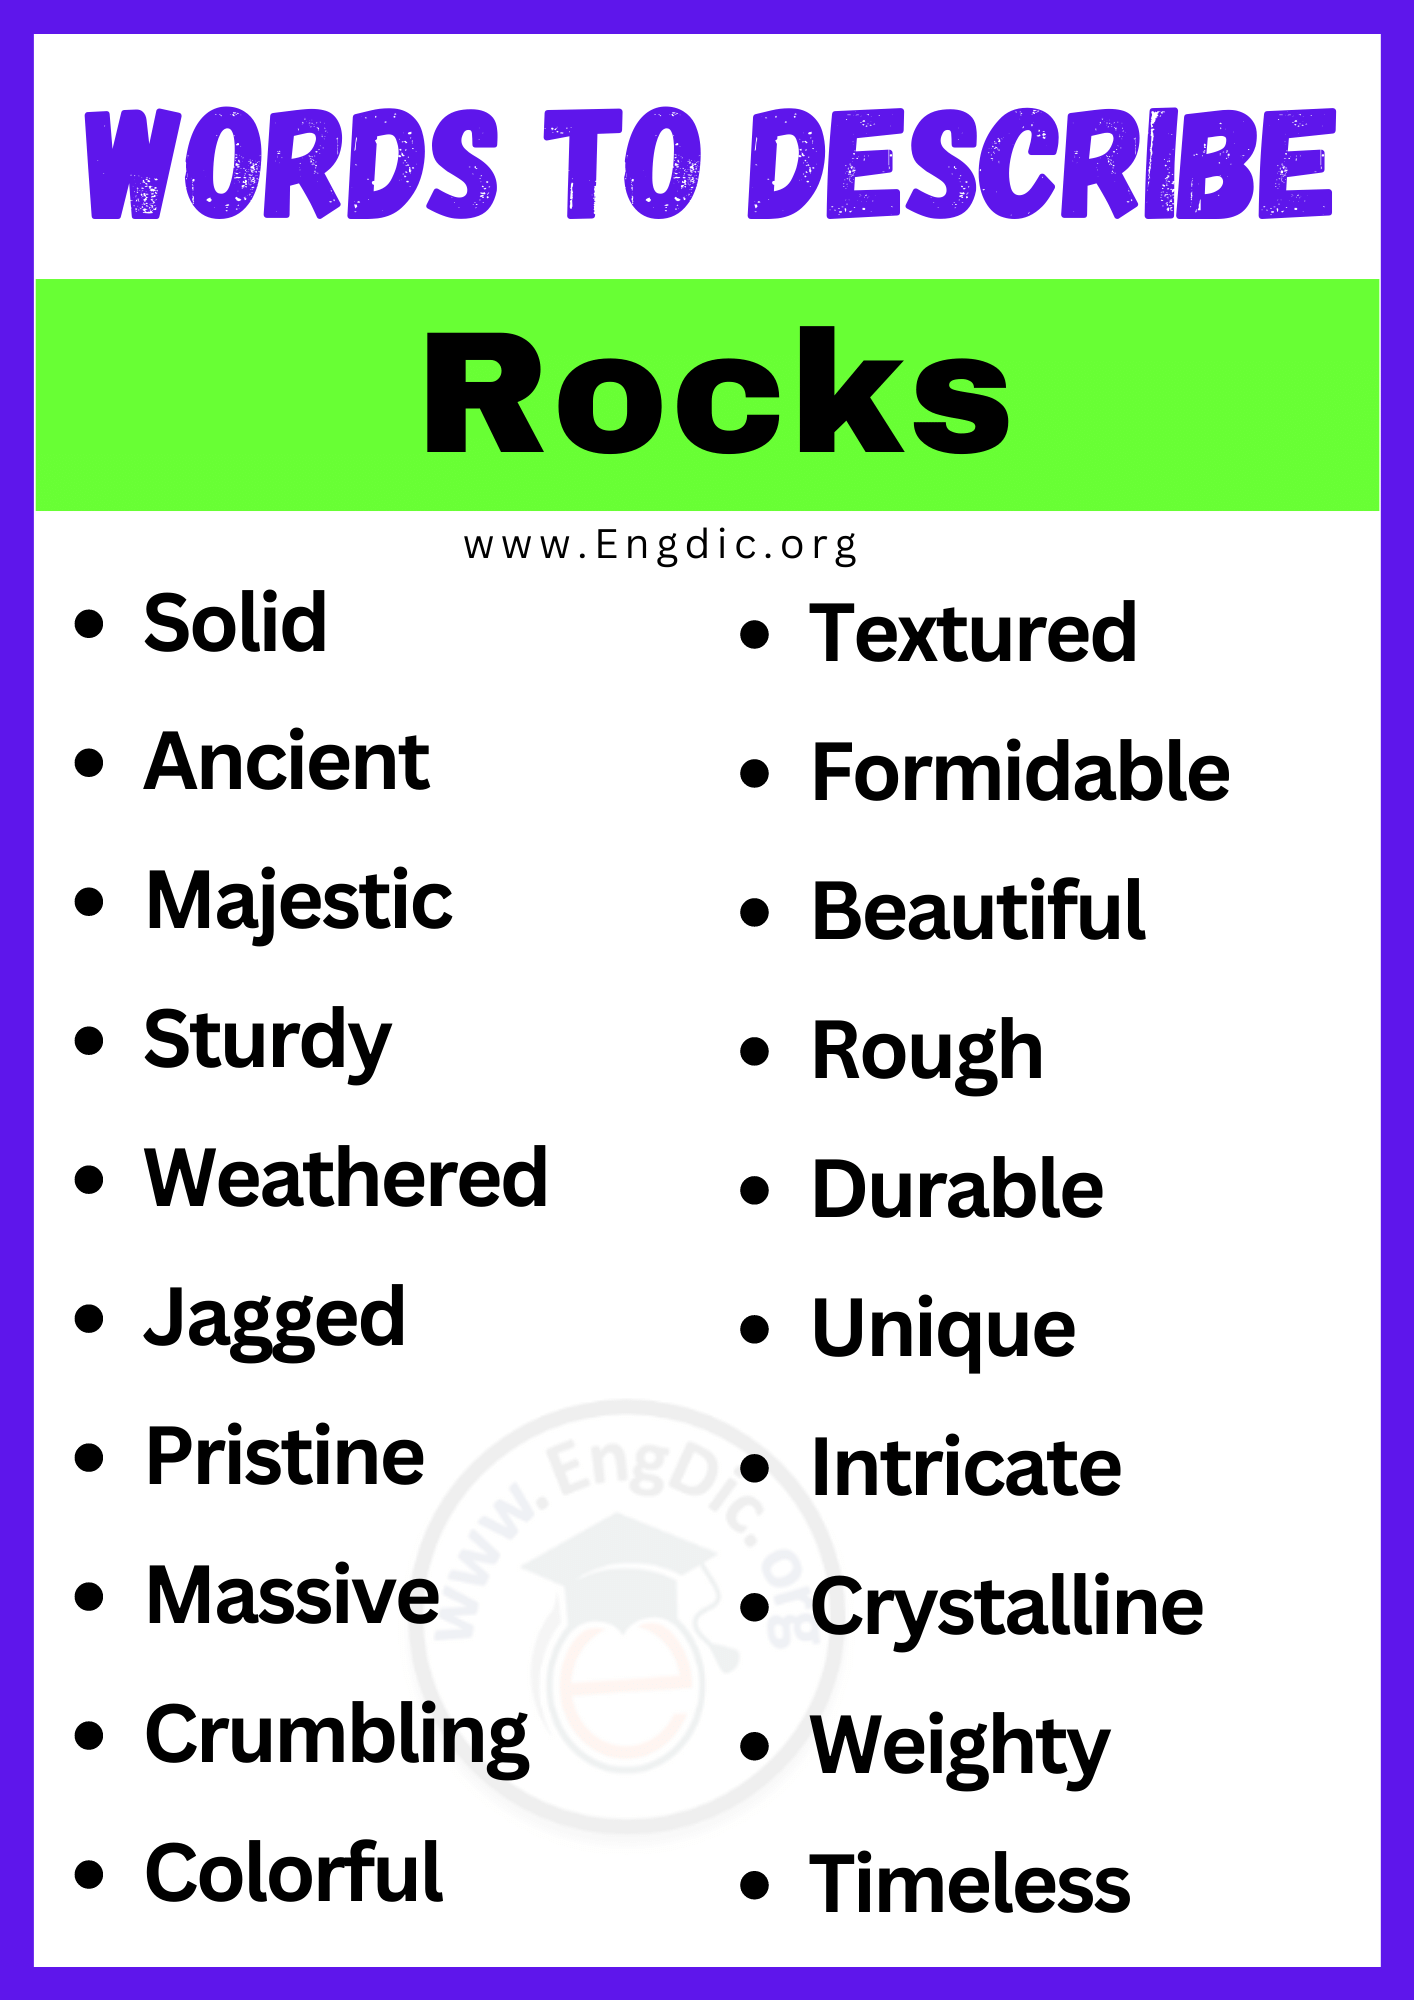 Words to Describe Rocks